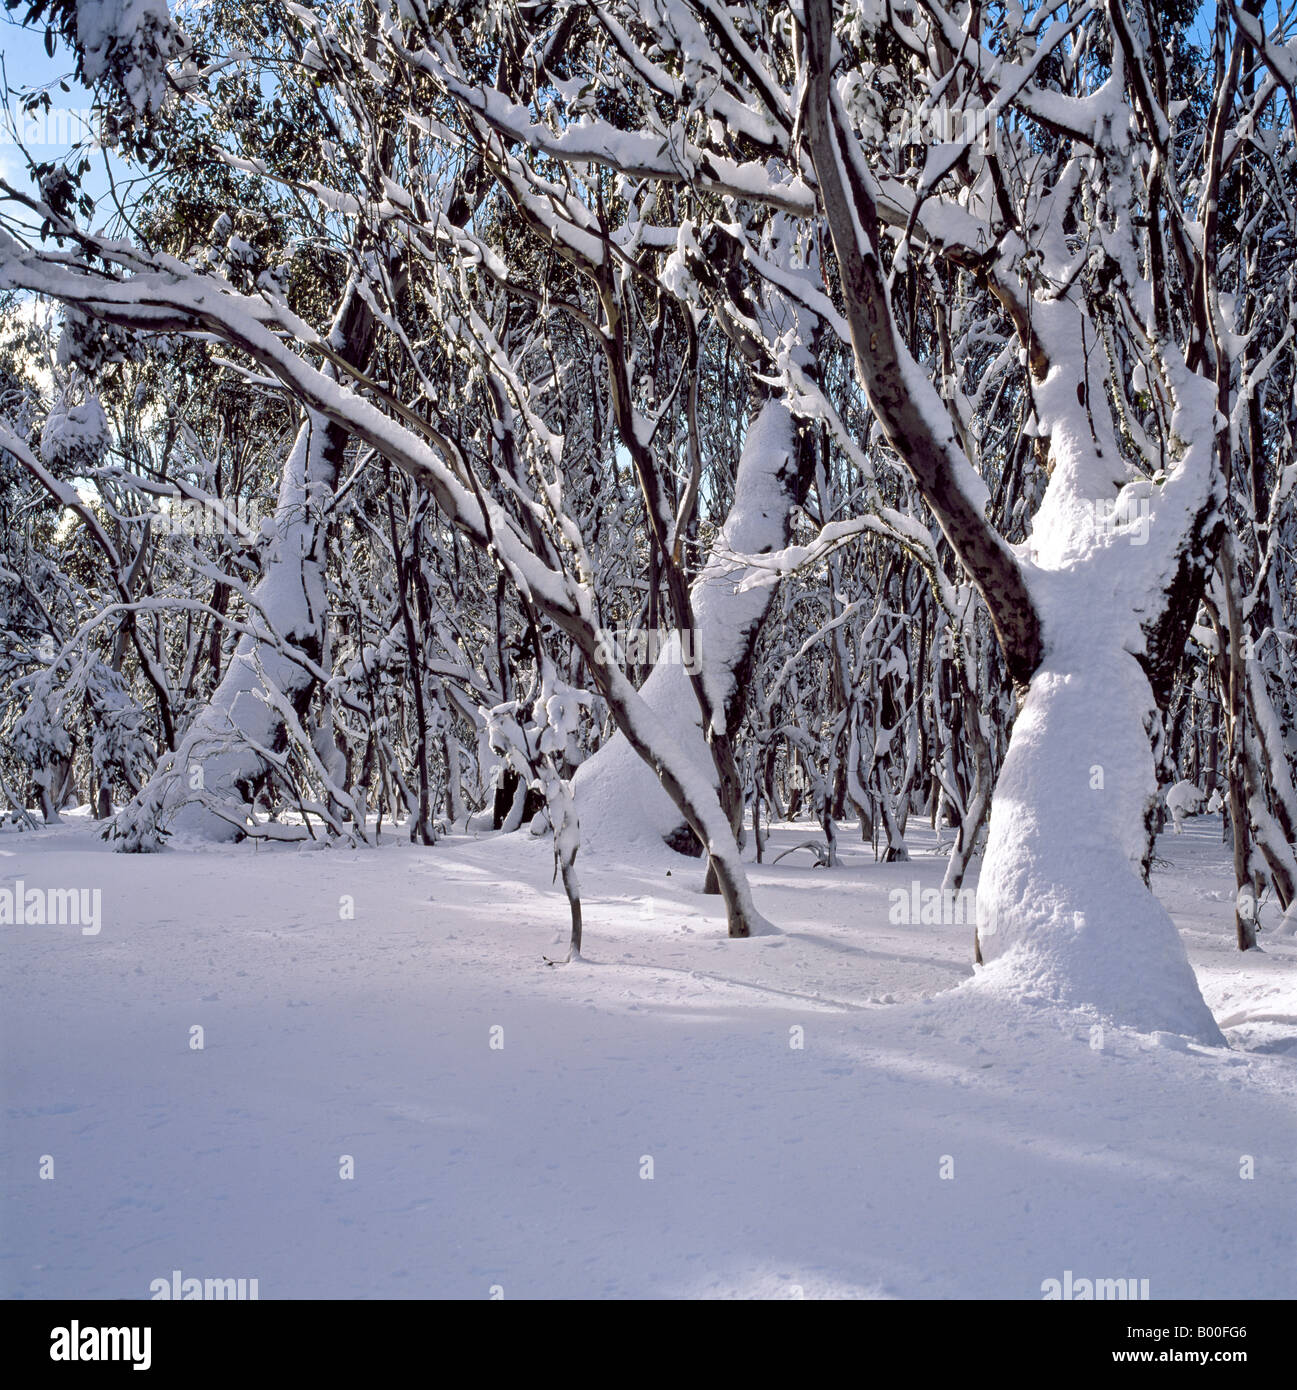 La neige sur la neige gencives près Mt Selwyn montagnes enneigées du Parc National Kosciuszko Australie Nouvelle Galles du Sud Banque D'Images